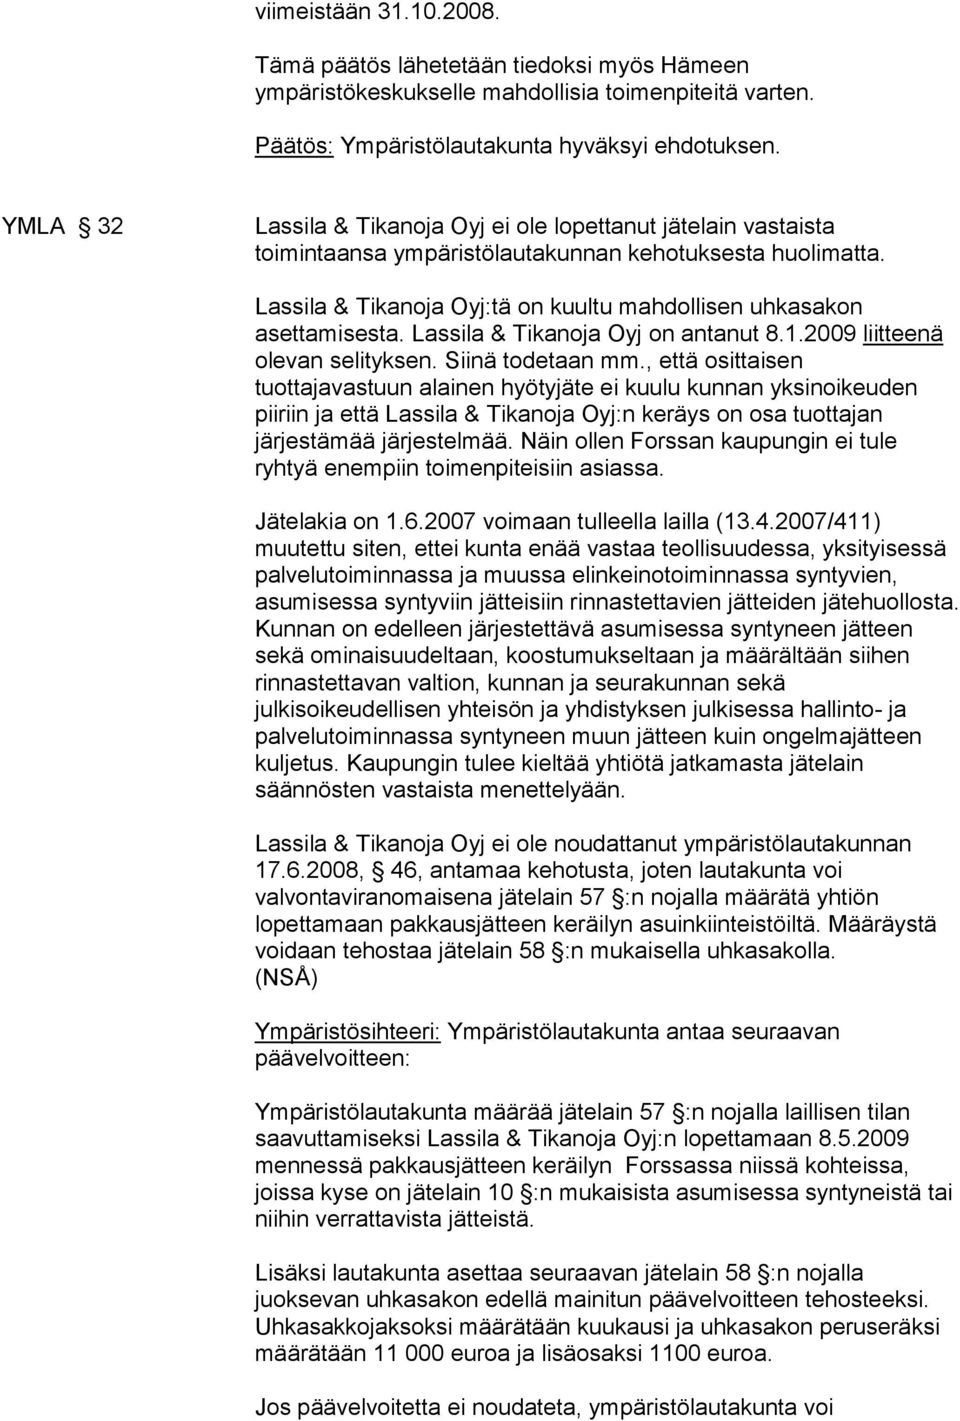 Lassila & Tikanoja Oyj on antanut 8.1.2009 liitteenä olevan selityksen. Siinä todetaan mm.